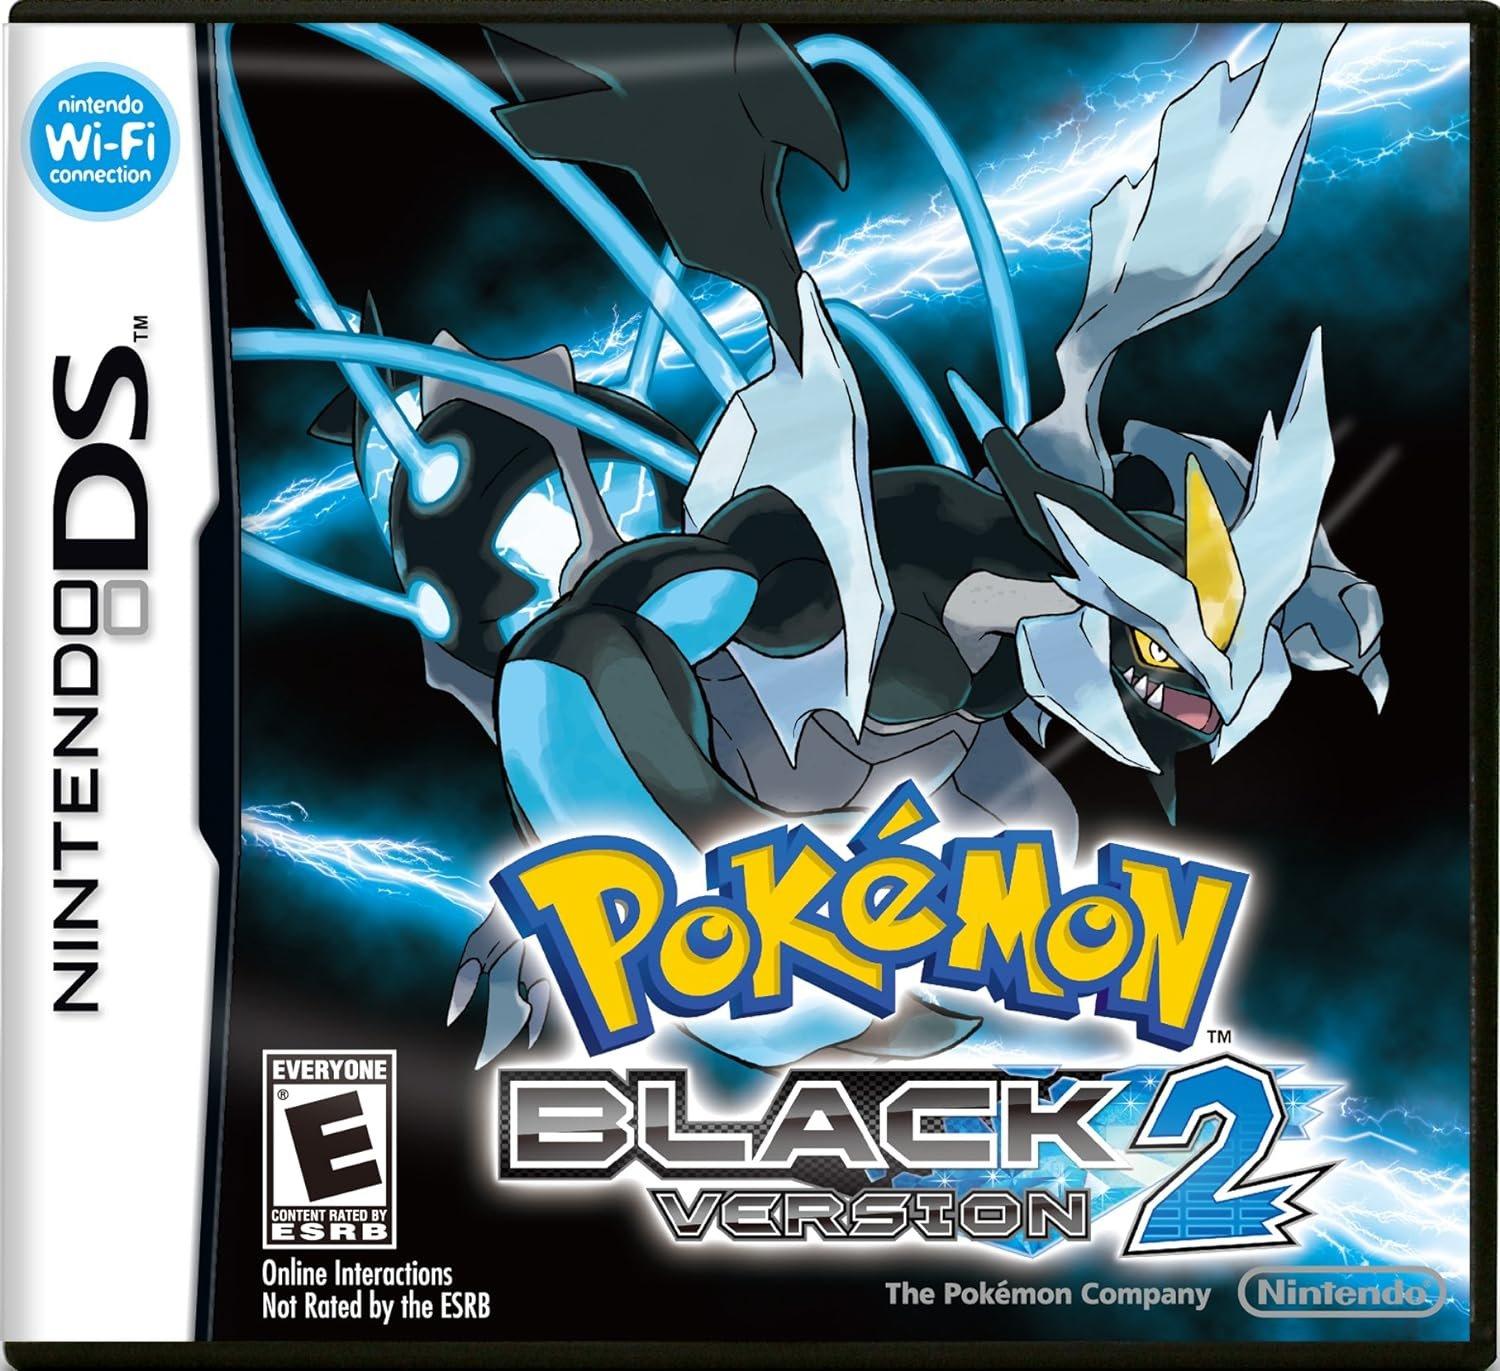 Pokemon Black 2 Pokemon White 2 US Version 2 in 1 DS Game R4 -  Denmark